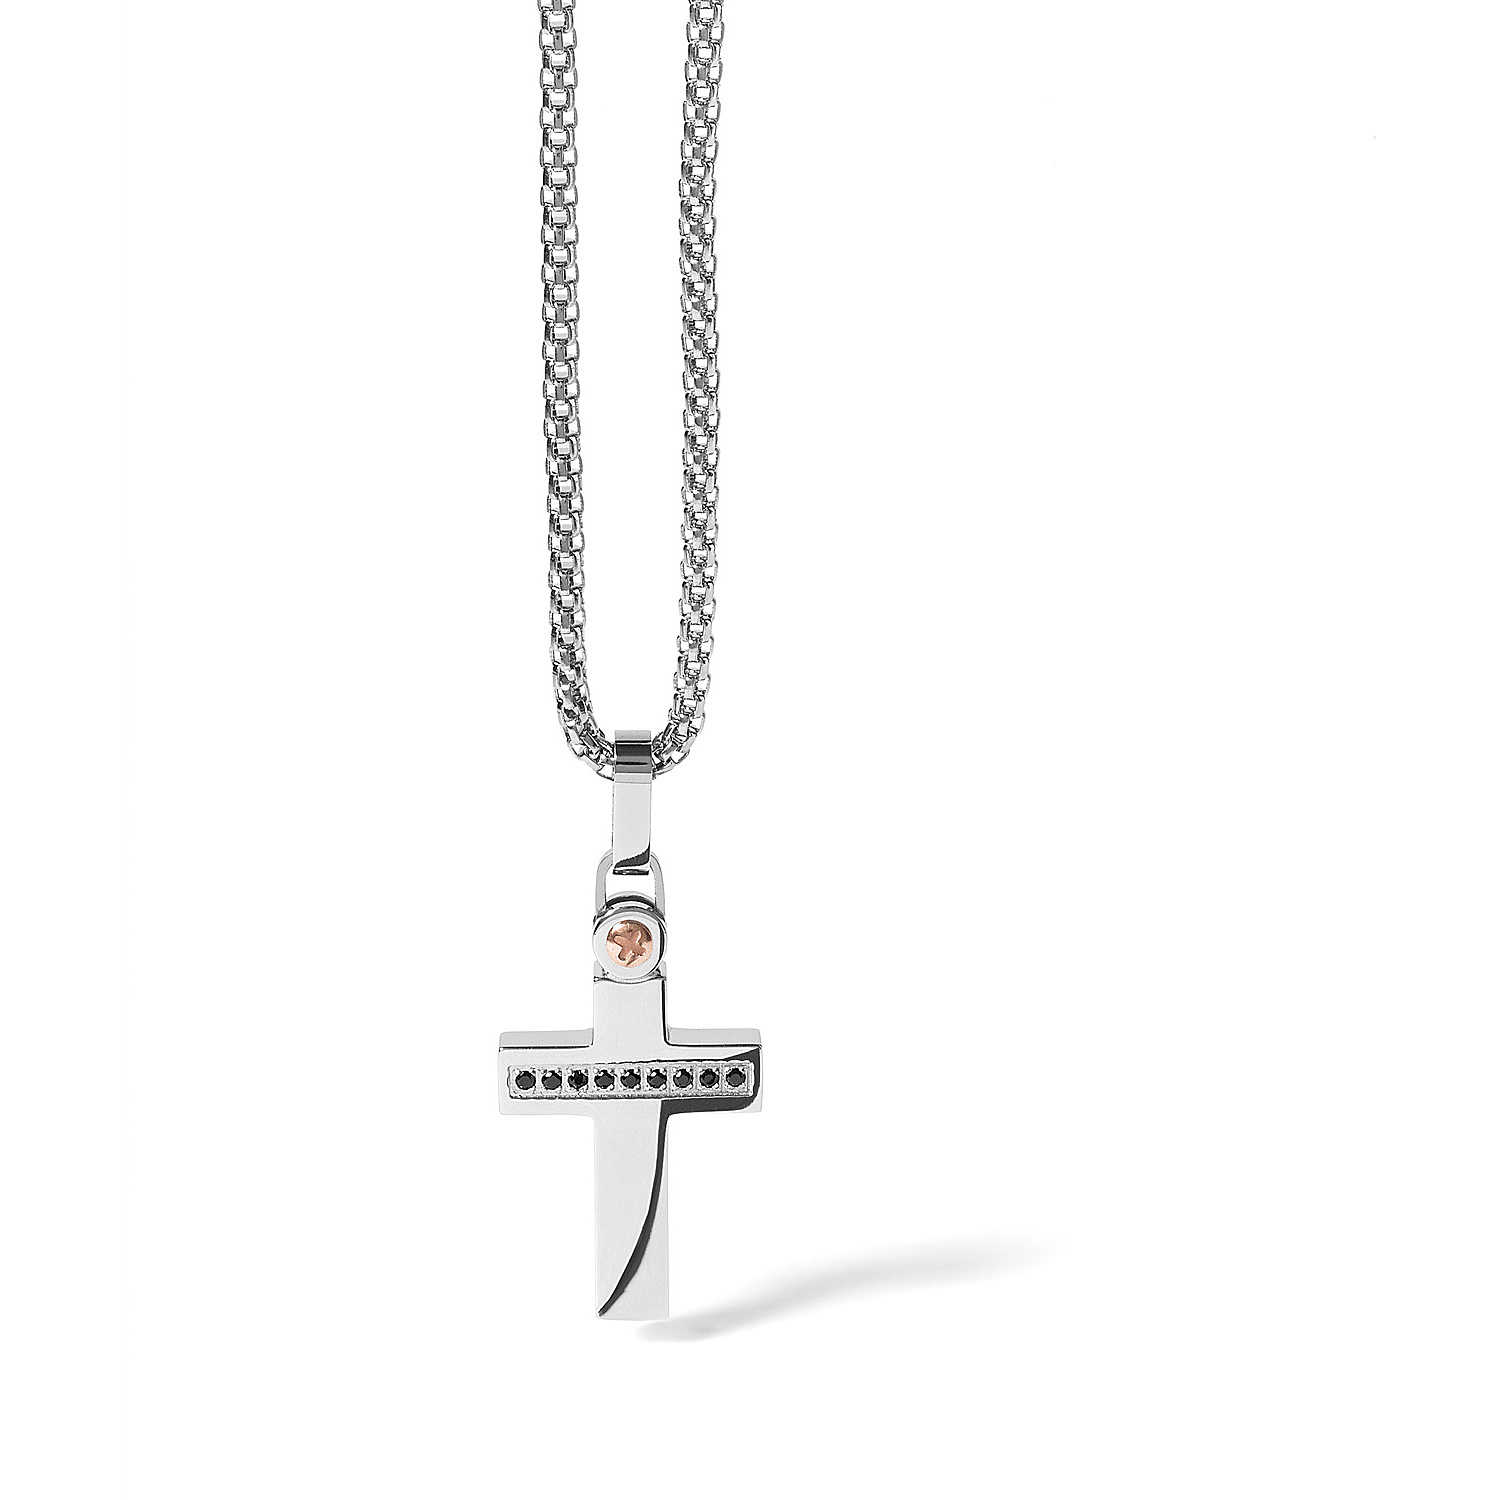 UGL 521 Men's Comete Gioielli Zip Necklace